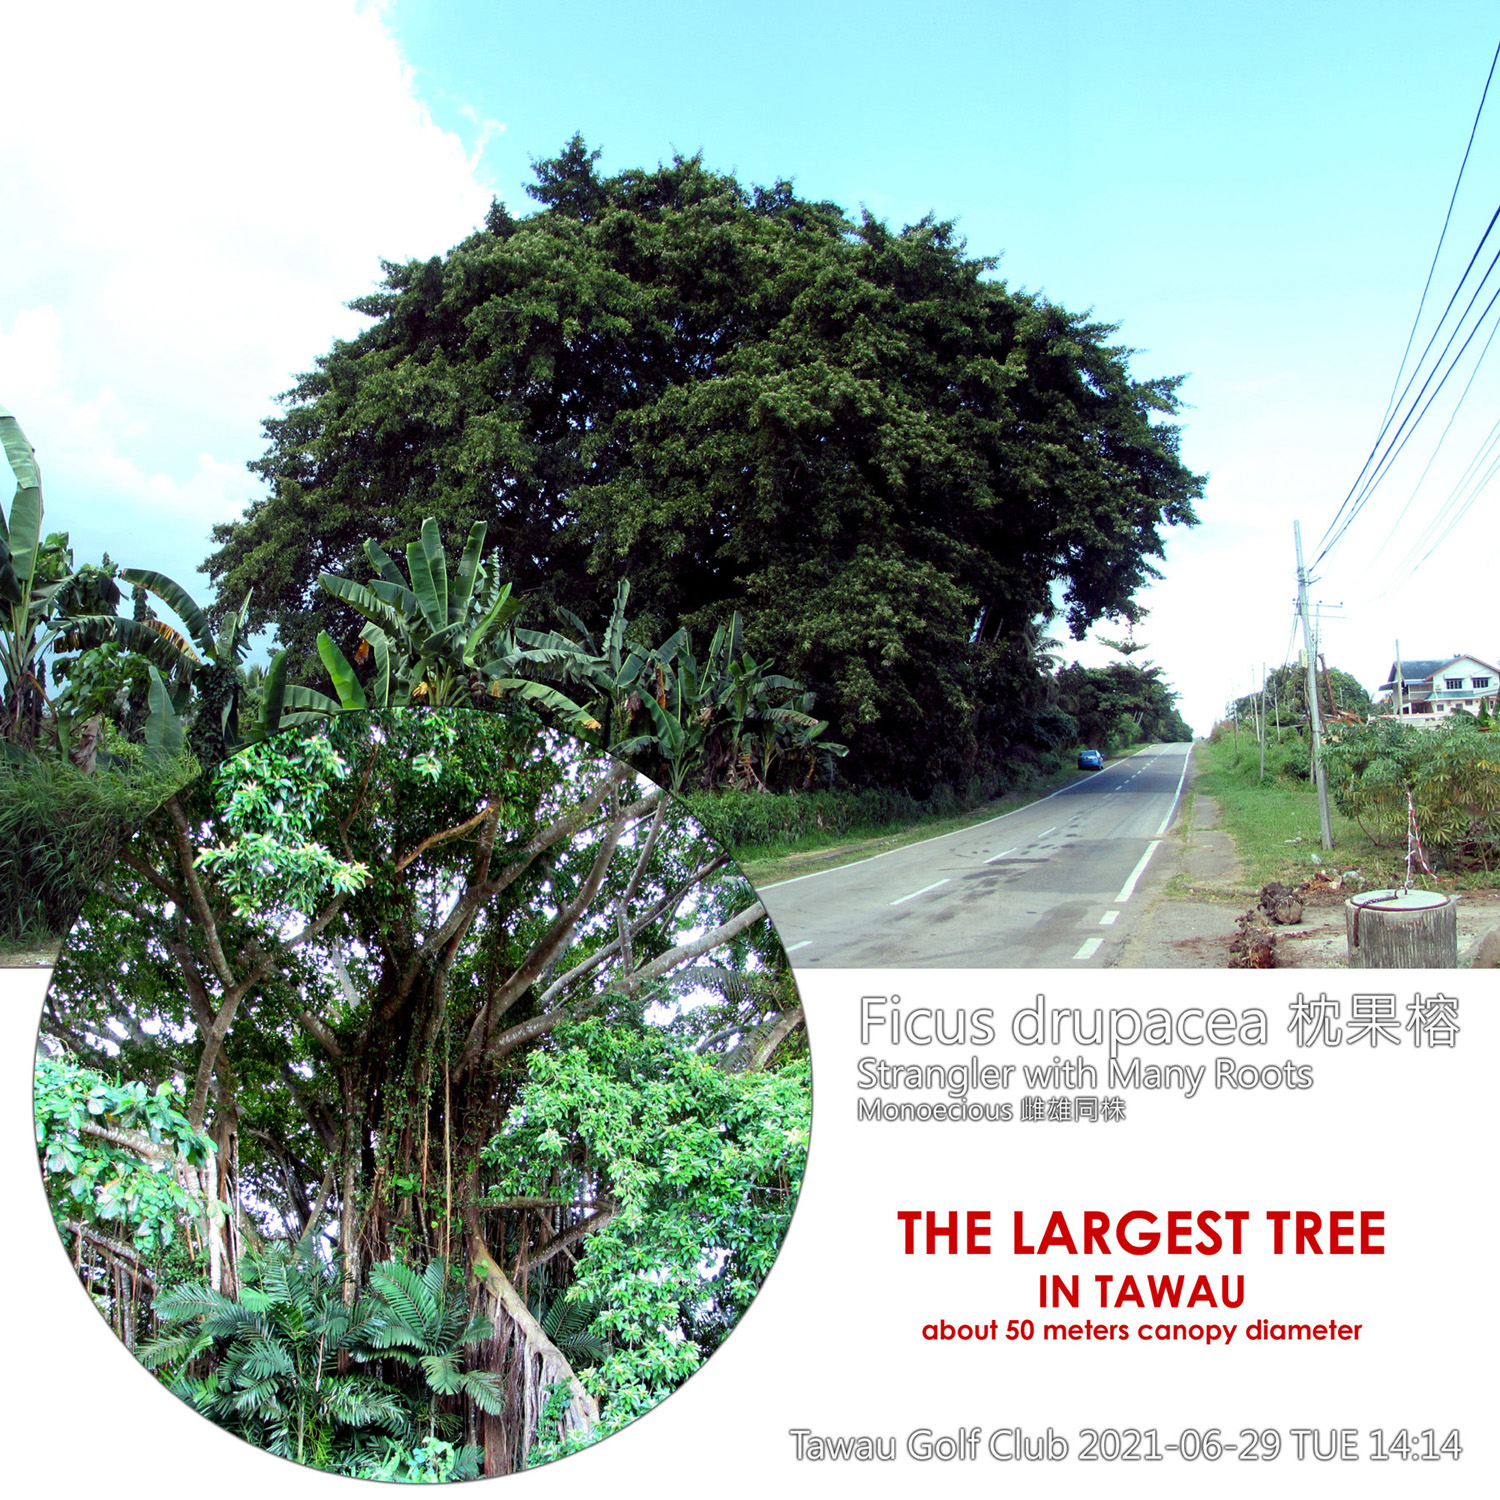 Ficus drupacea 枕果榕